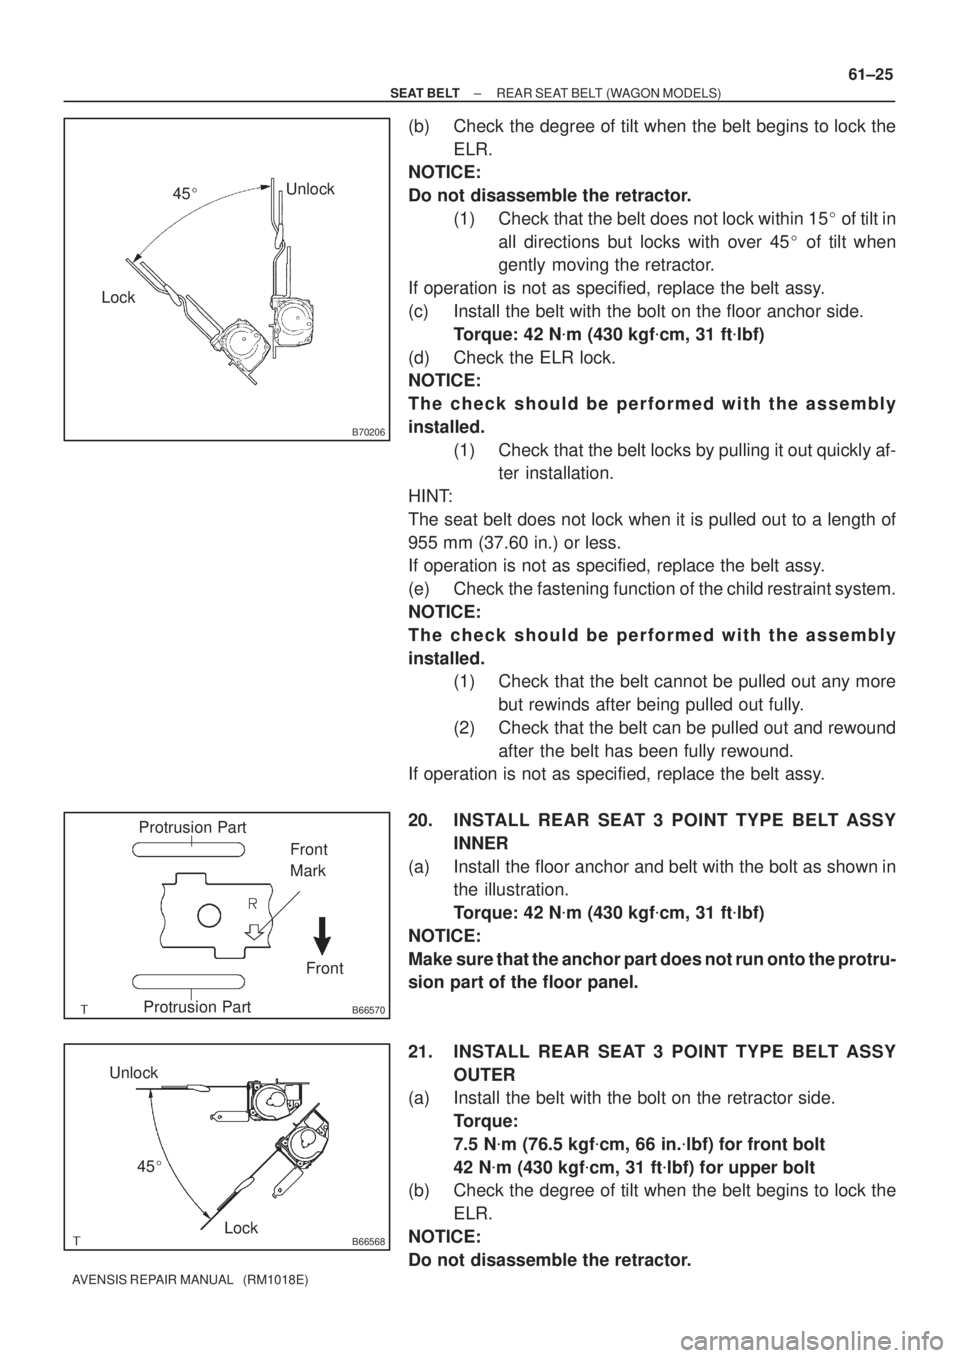 TOYOTA AVENSIS 2005  Service Repair Manual B70206
LockUnlock
45
B66570
Protrusion Part
Front Front
Mark
Protrusion Part
B66568Lock Unlock
45
± SEAT BELTREAR SEAT BELT (WAGON MODELS)
61±25
AVENSIS REPAIR MANUAL   (RM1018E)
(b) Check the deg